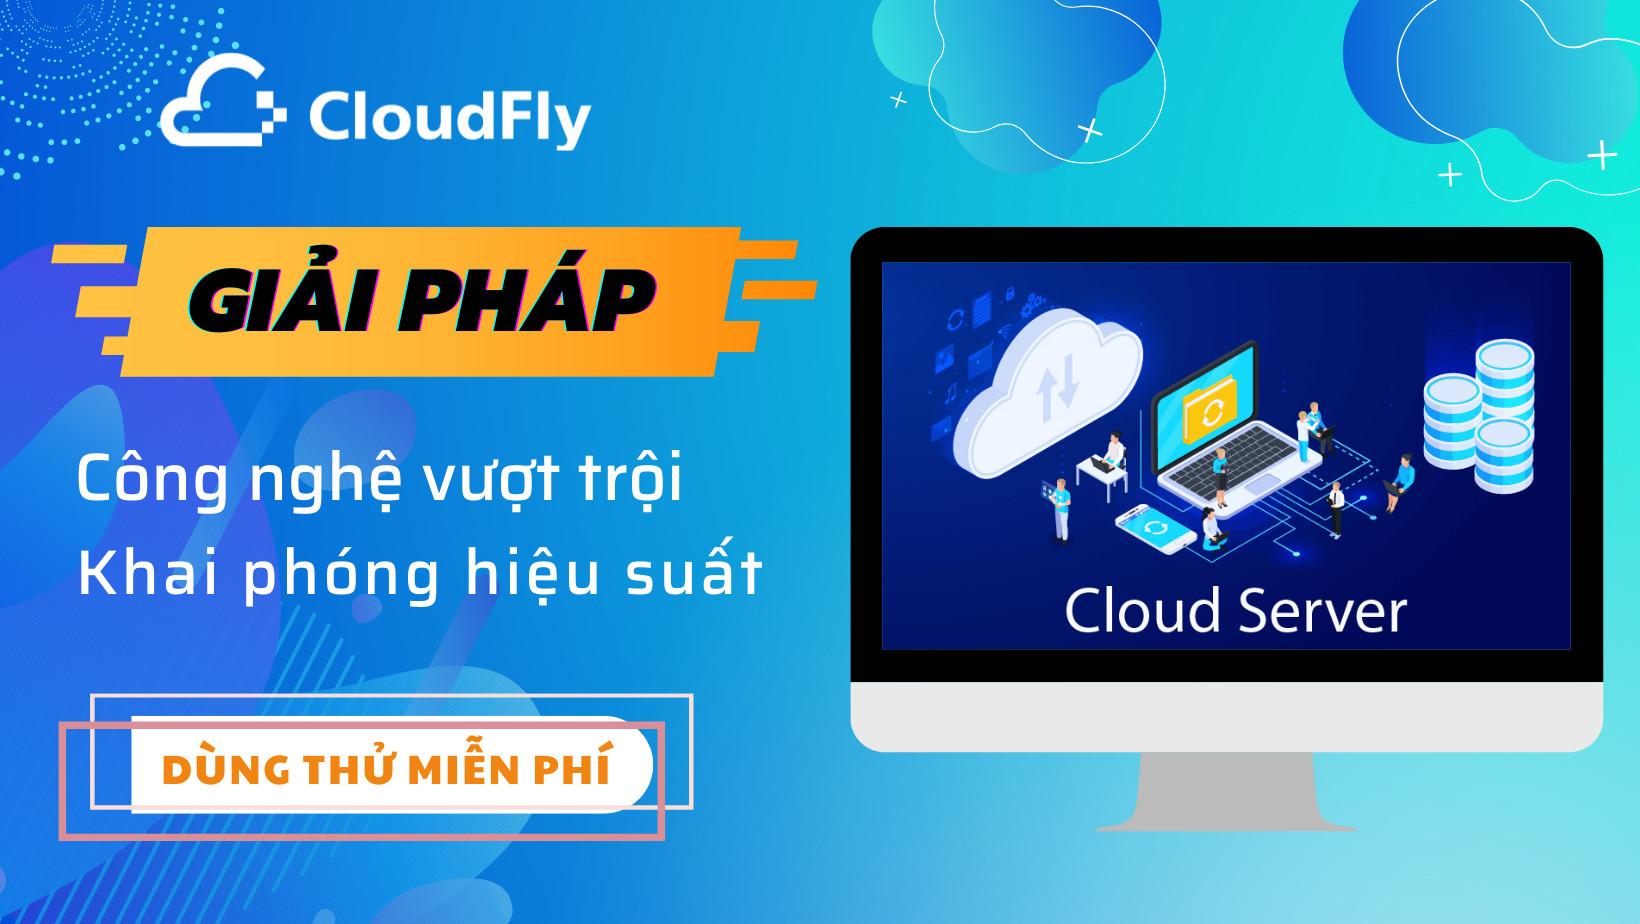 cloudfly cung cấp cloud server miễn phí